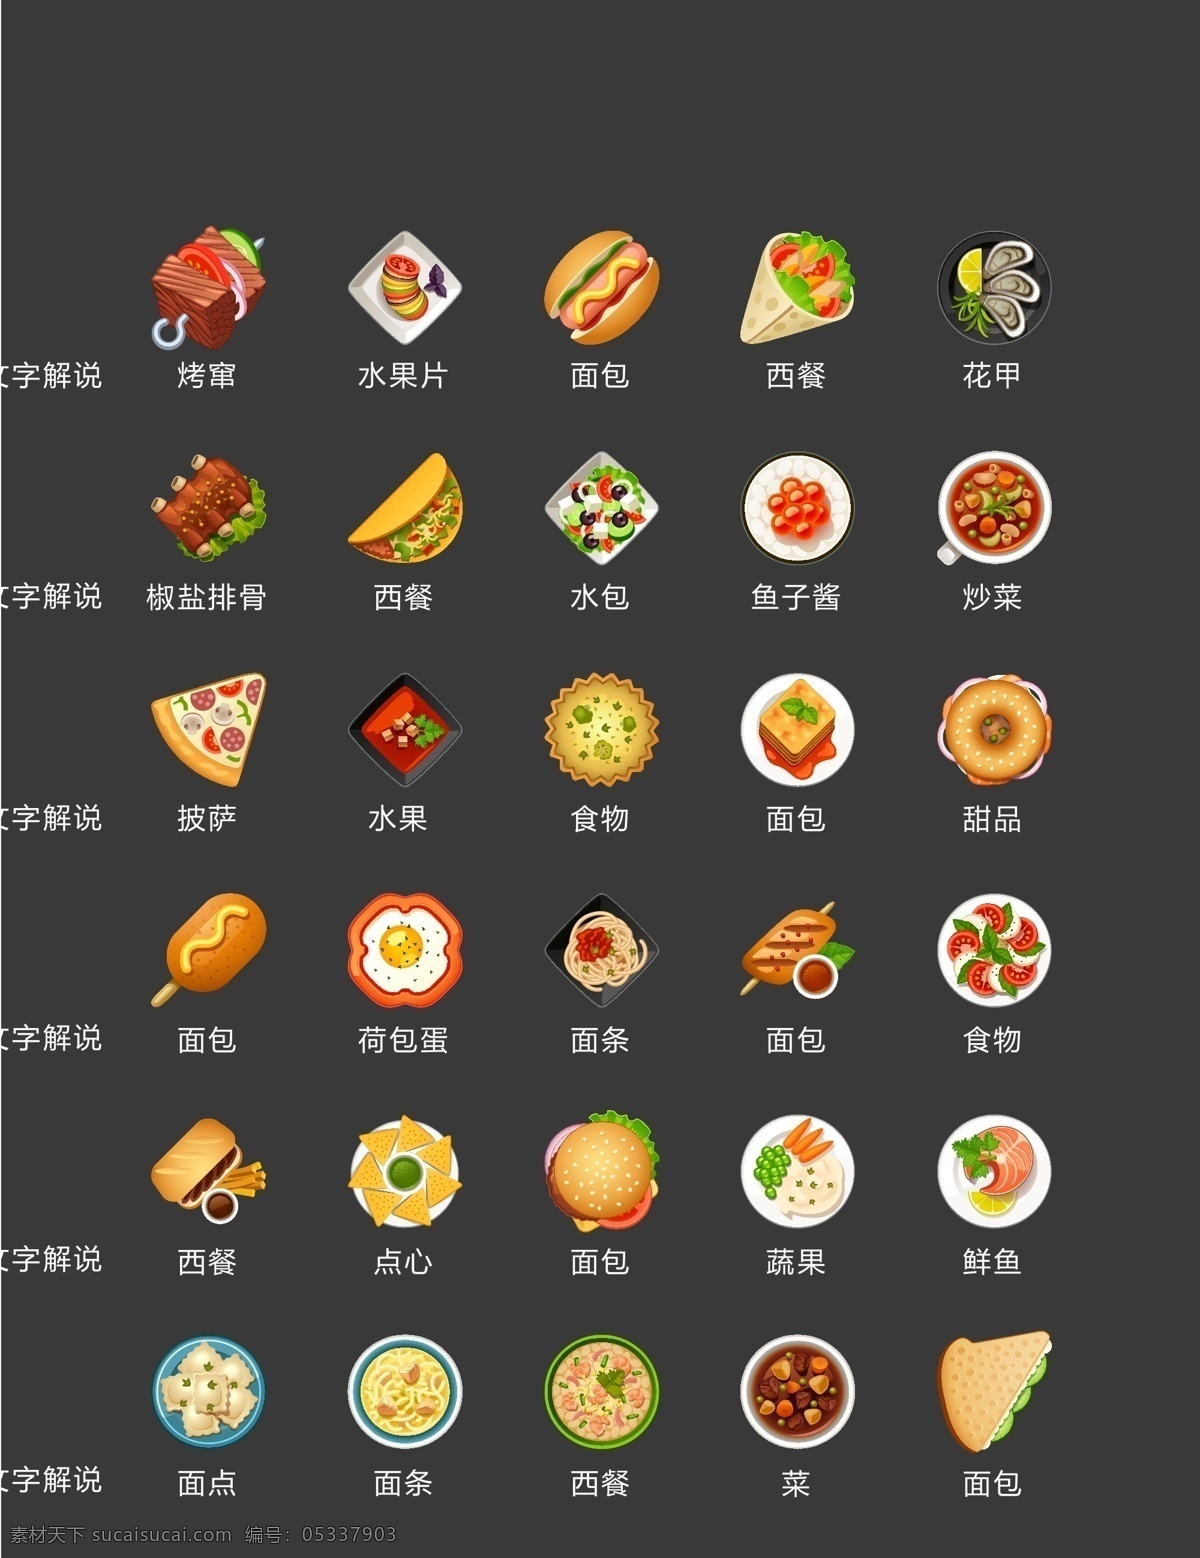 食物图标 图标 食物 icon 水果